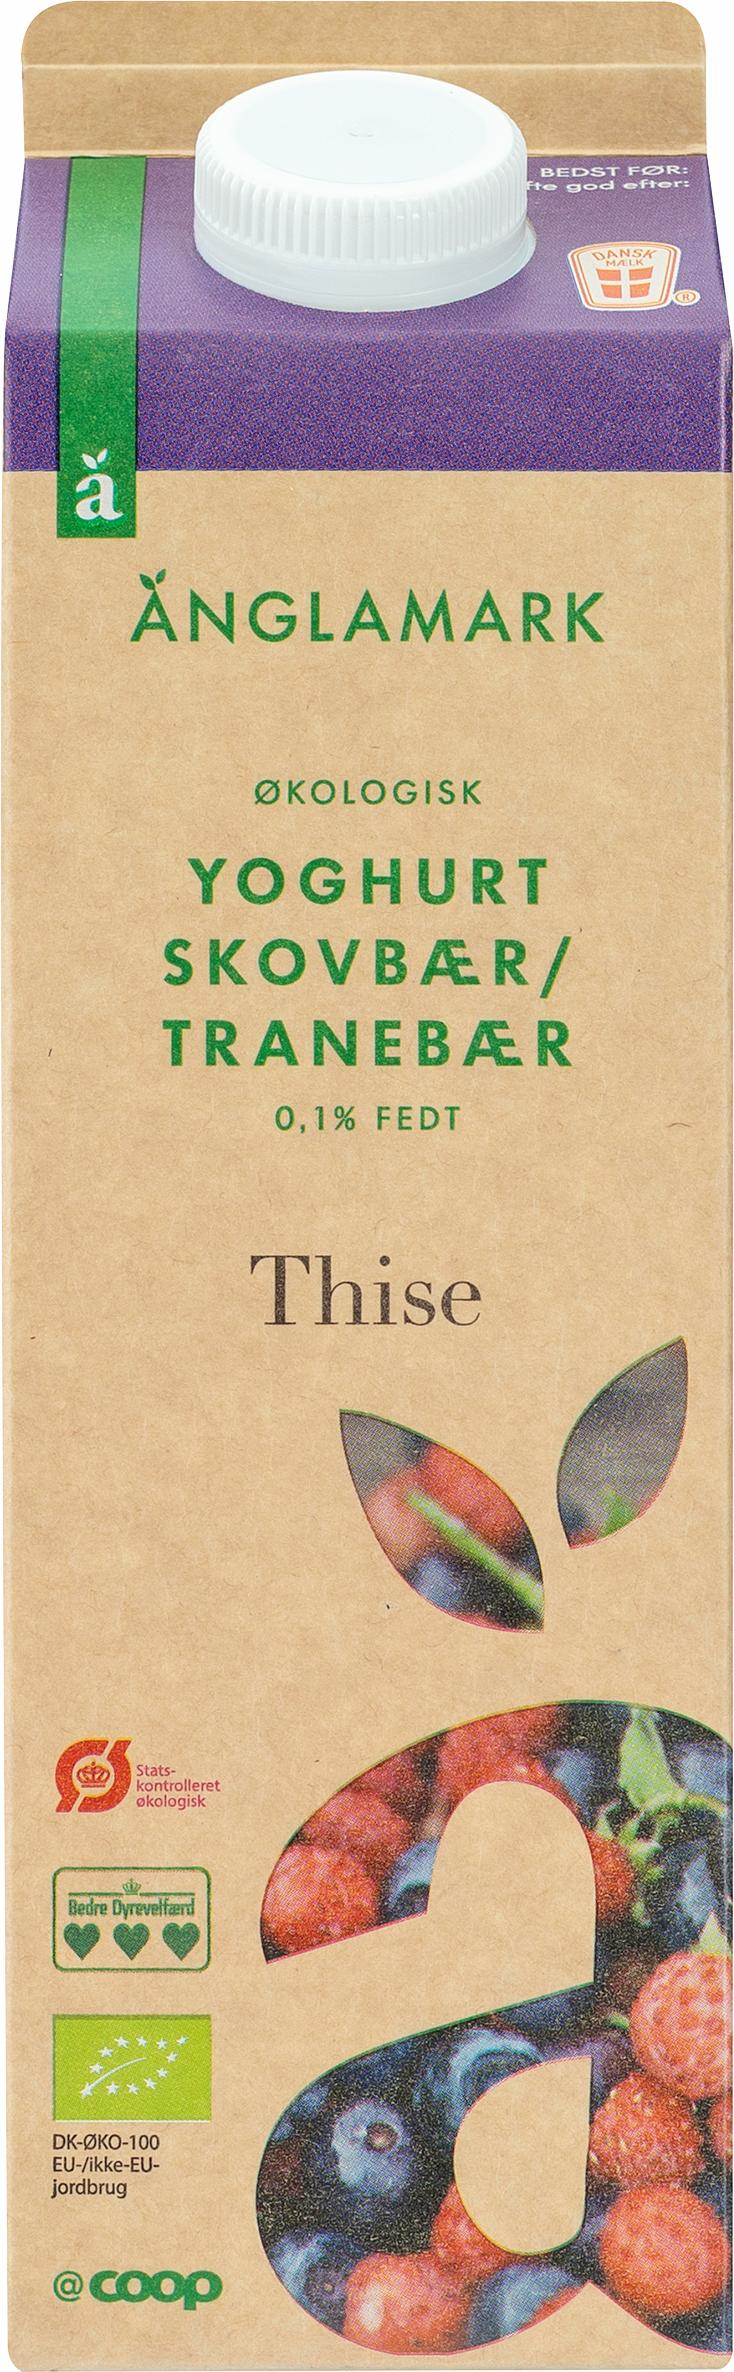 Änglamark Yoghurt Skovbær/Tranebær 0,1% 1000g